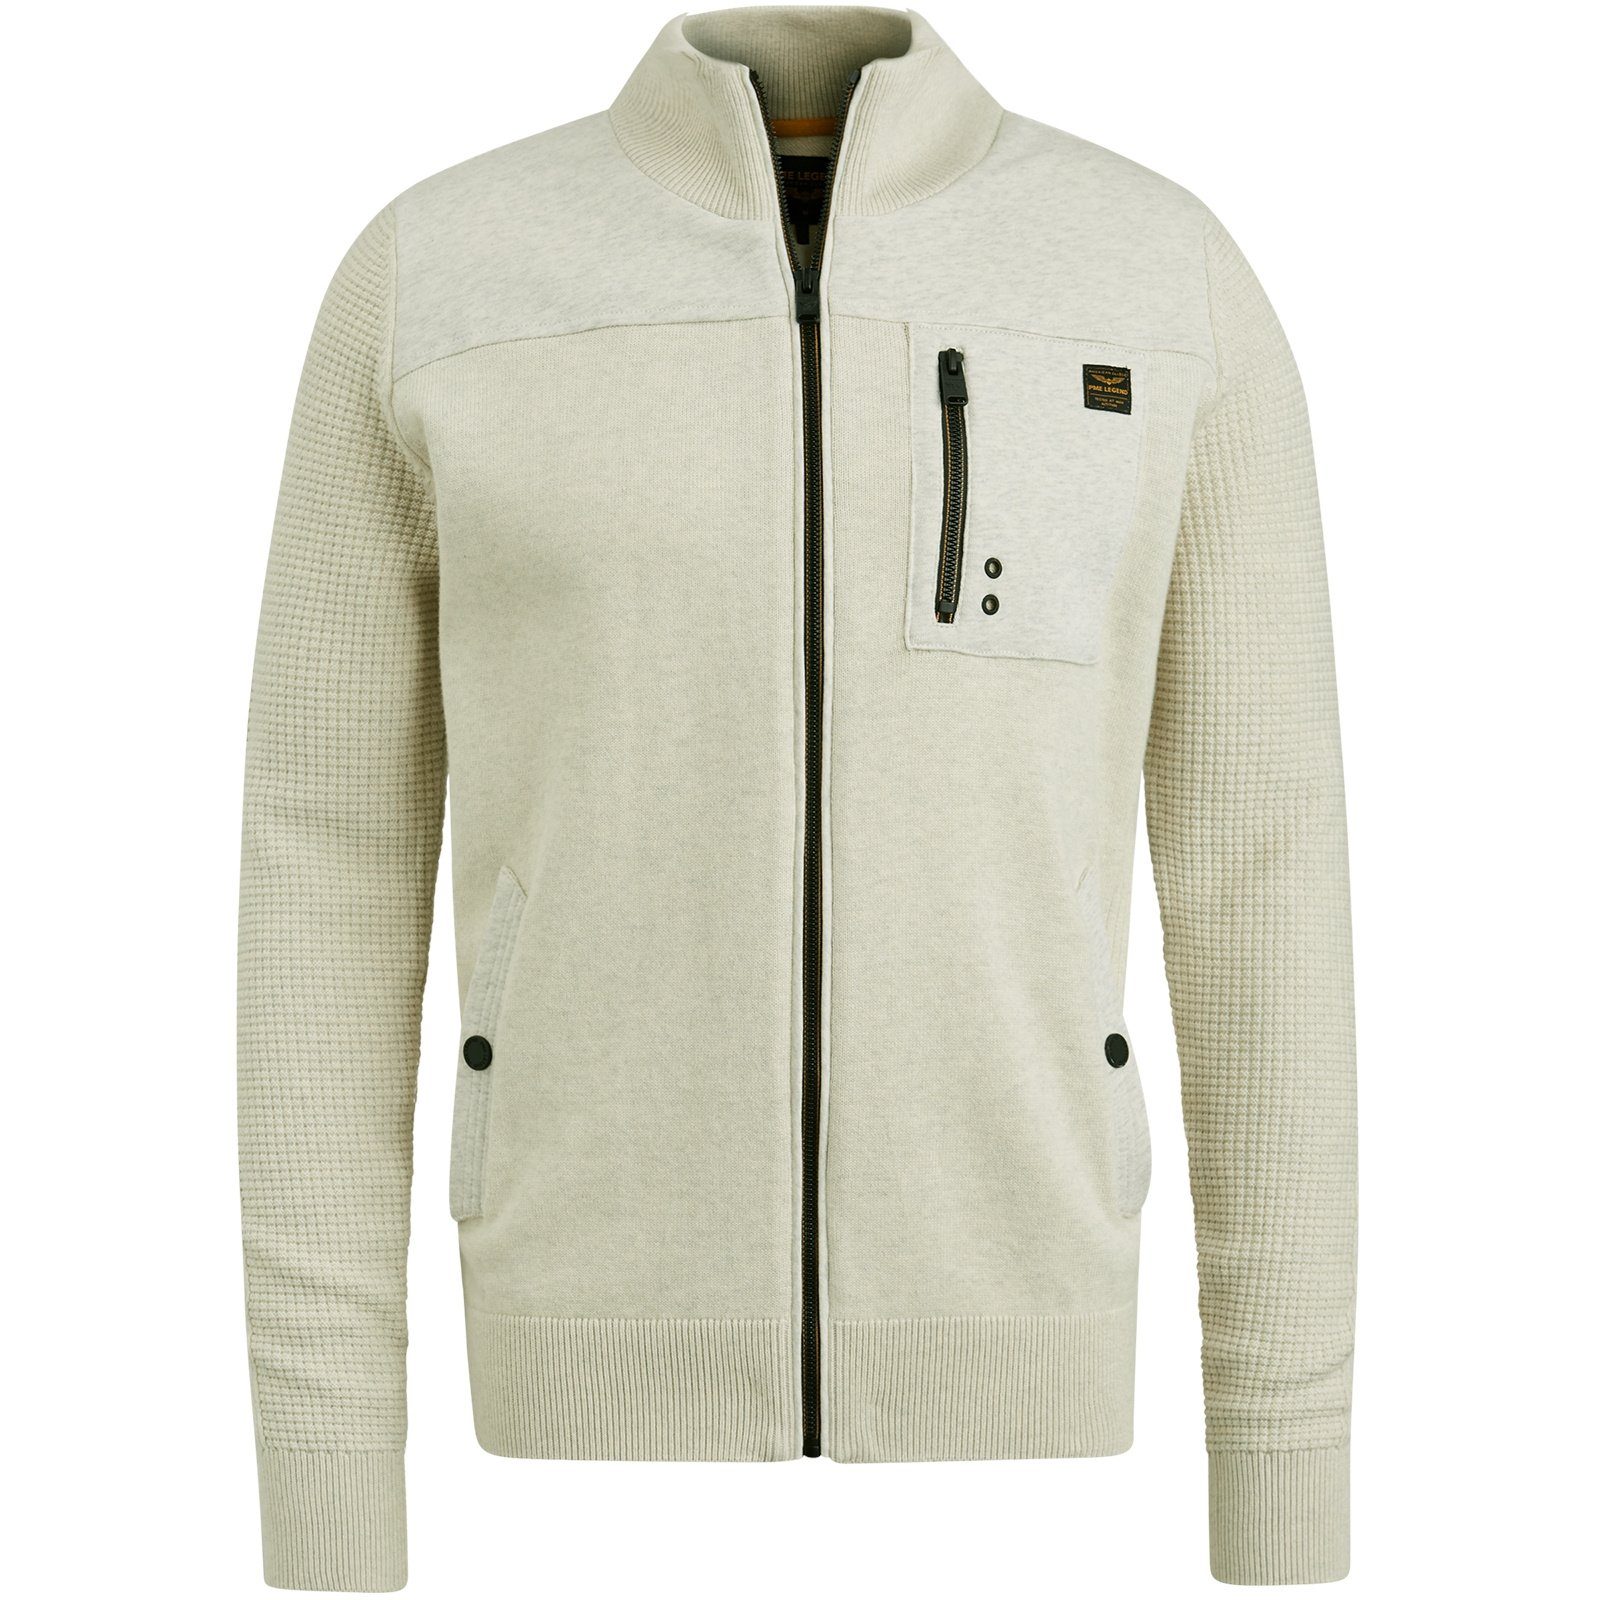 PME LEGEND Sweatjacke Zip jacket white bone combination sweat knit